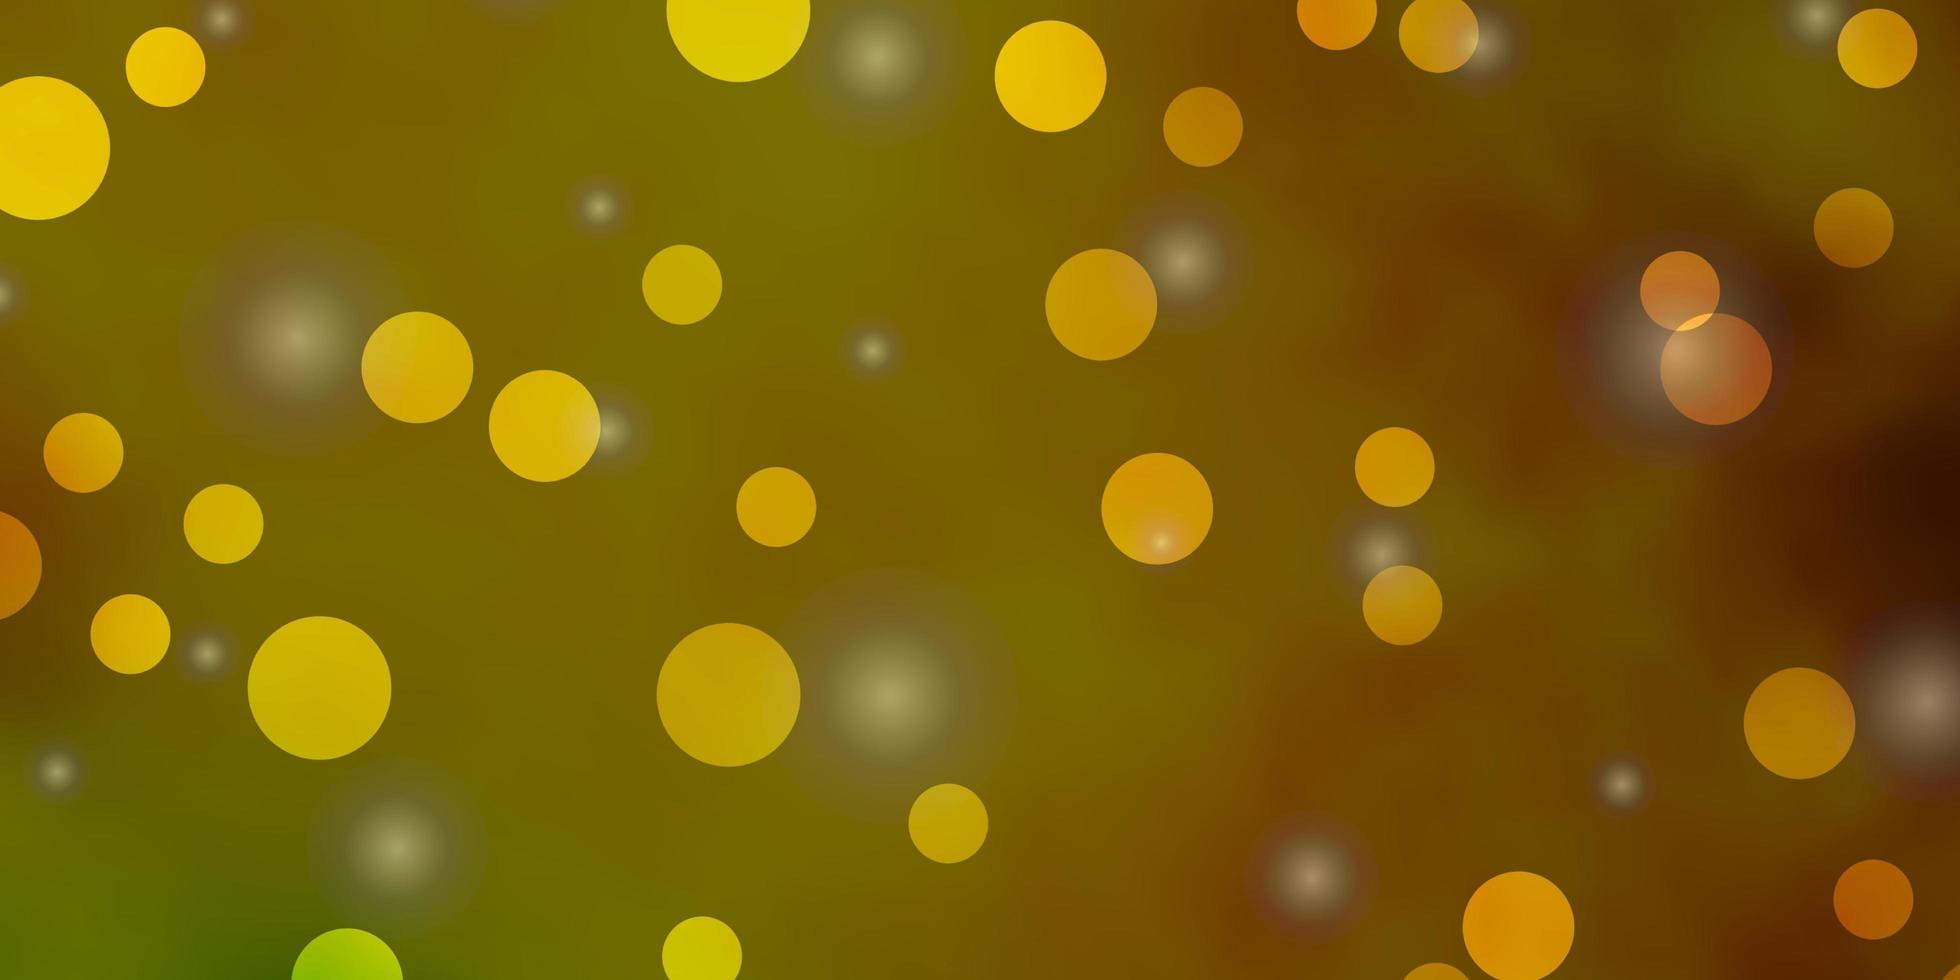 mörkgrön, gul vektorbakgrund med cirklar, stjärnor. vektor